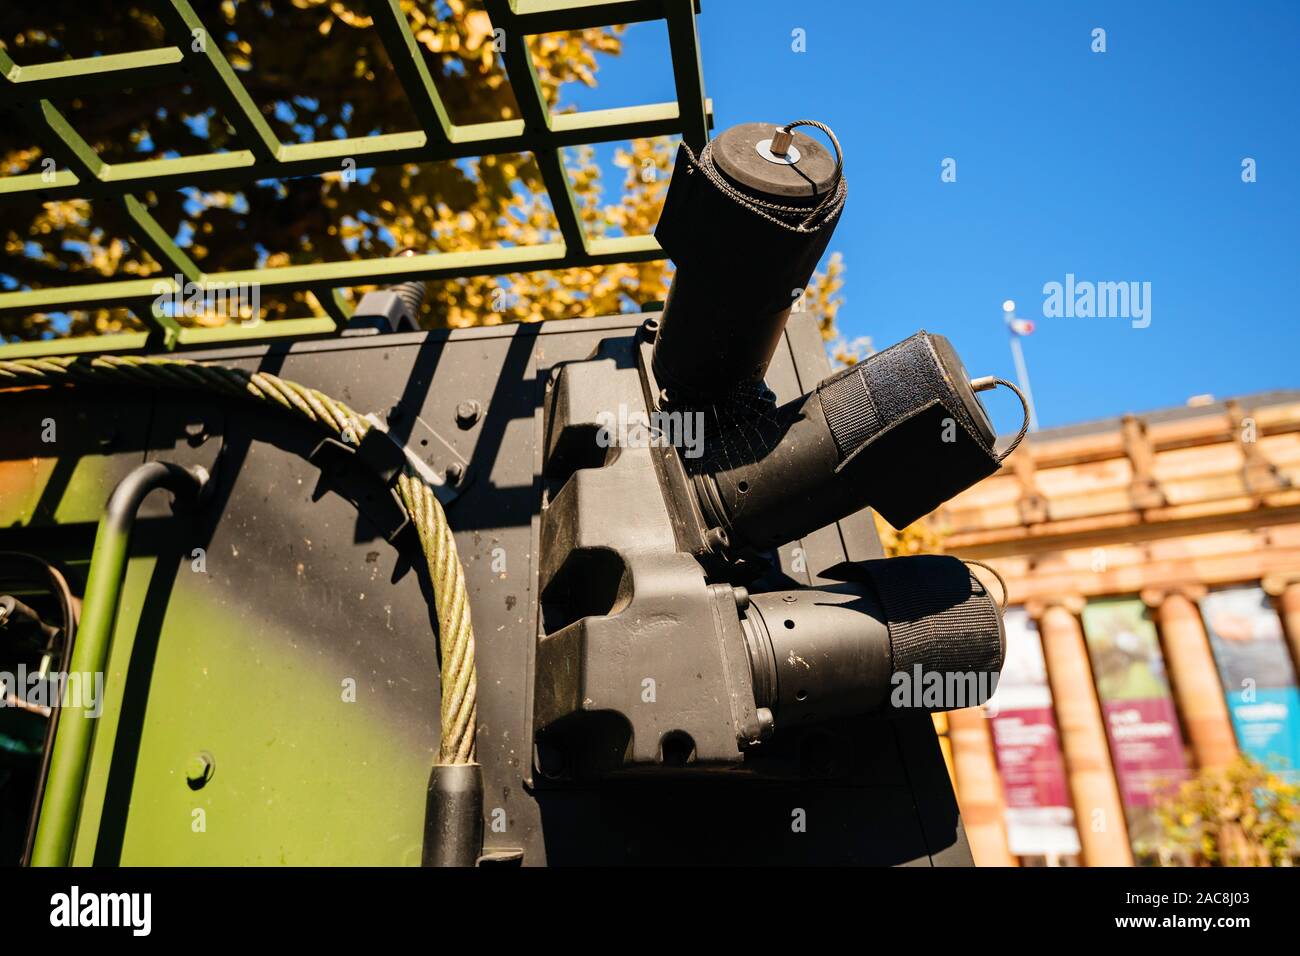 Strasbourg, France - Sep 21, 2019 : détails du véhicule blindé de combat d'infanterie - VBCI, véhicule blindé de combat d'infanterie fabriqué par Renault Banque D'Images